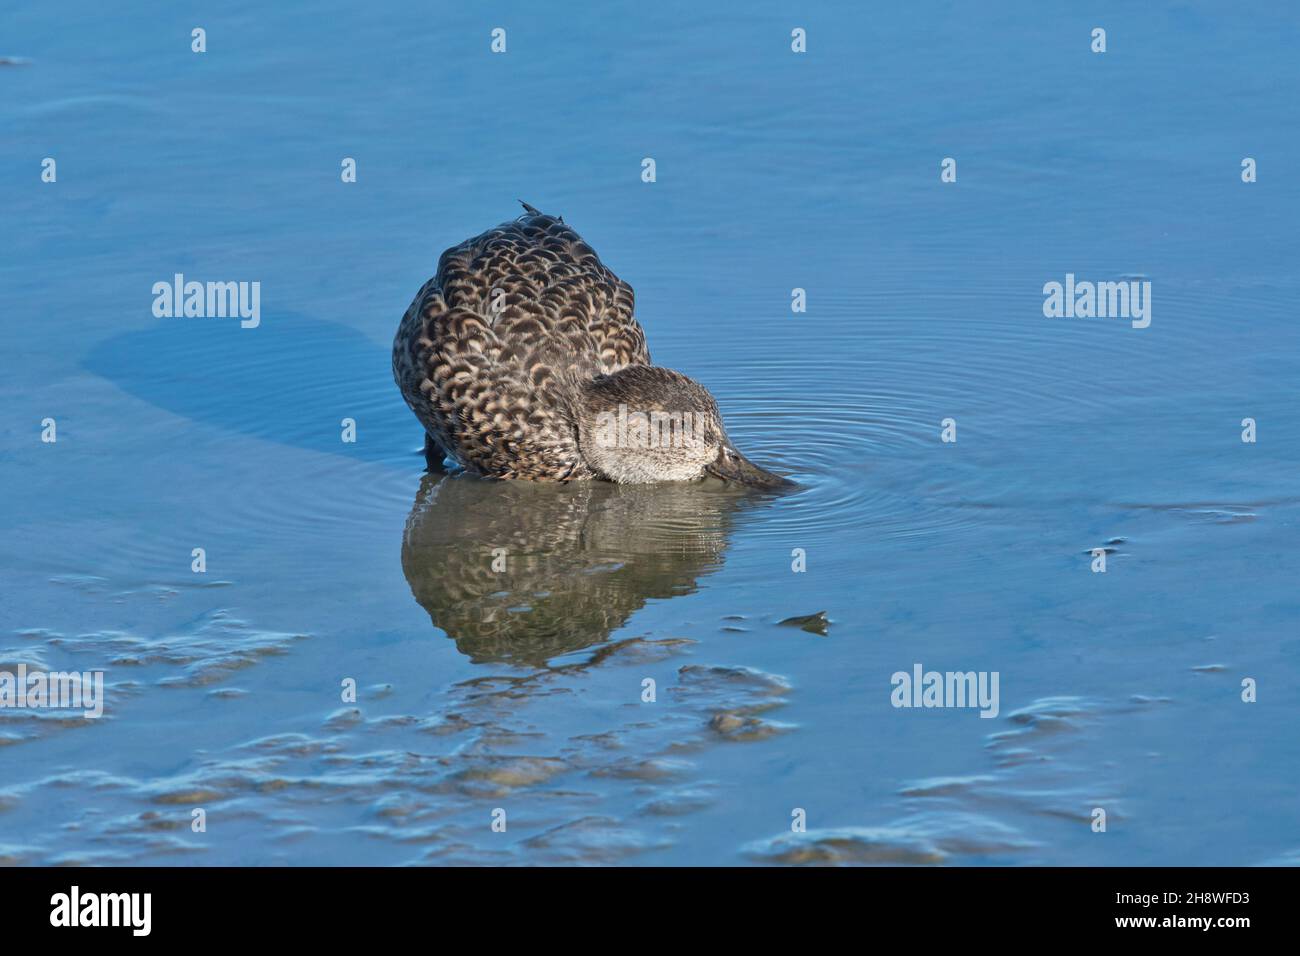 Weibchen oder Ente Eurasische Ente (Anas crecca), die im seichten Wasser für Nahrung taumelnd sind Stockfoto